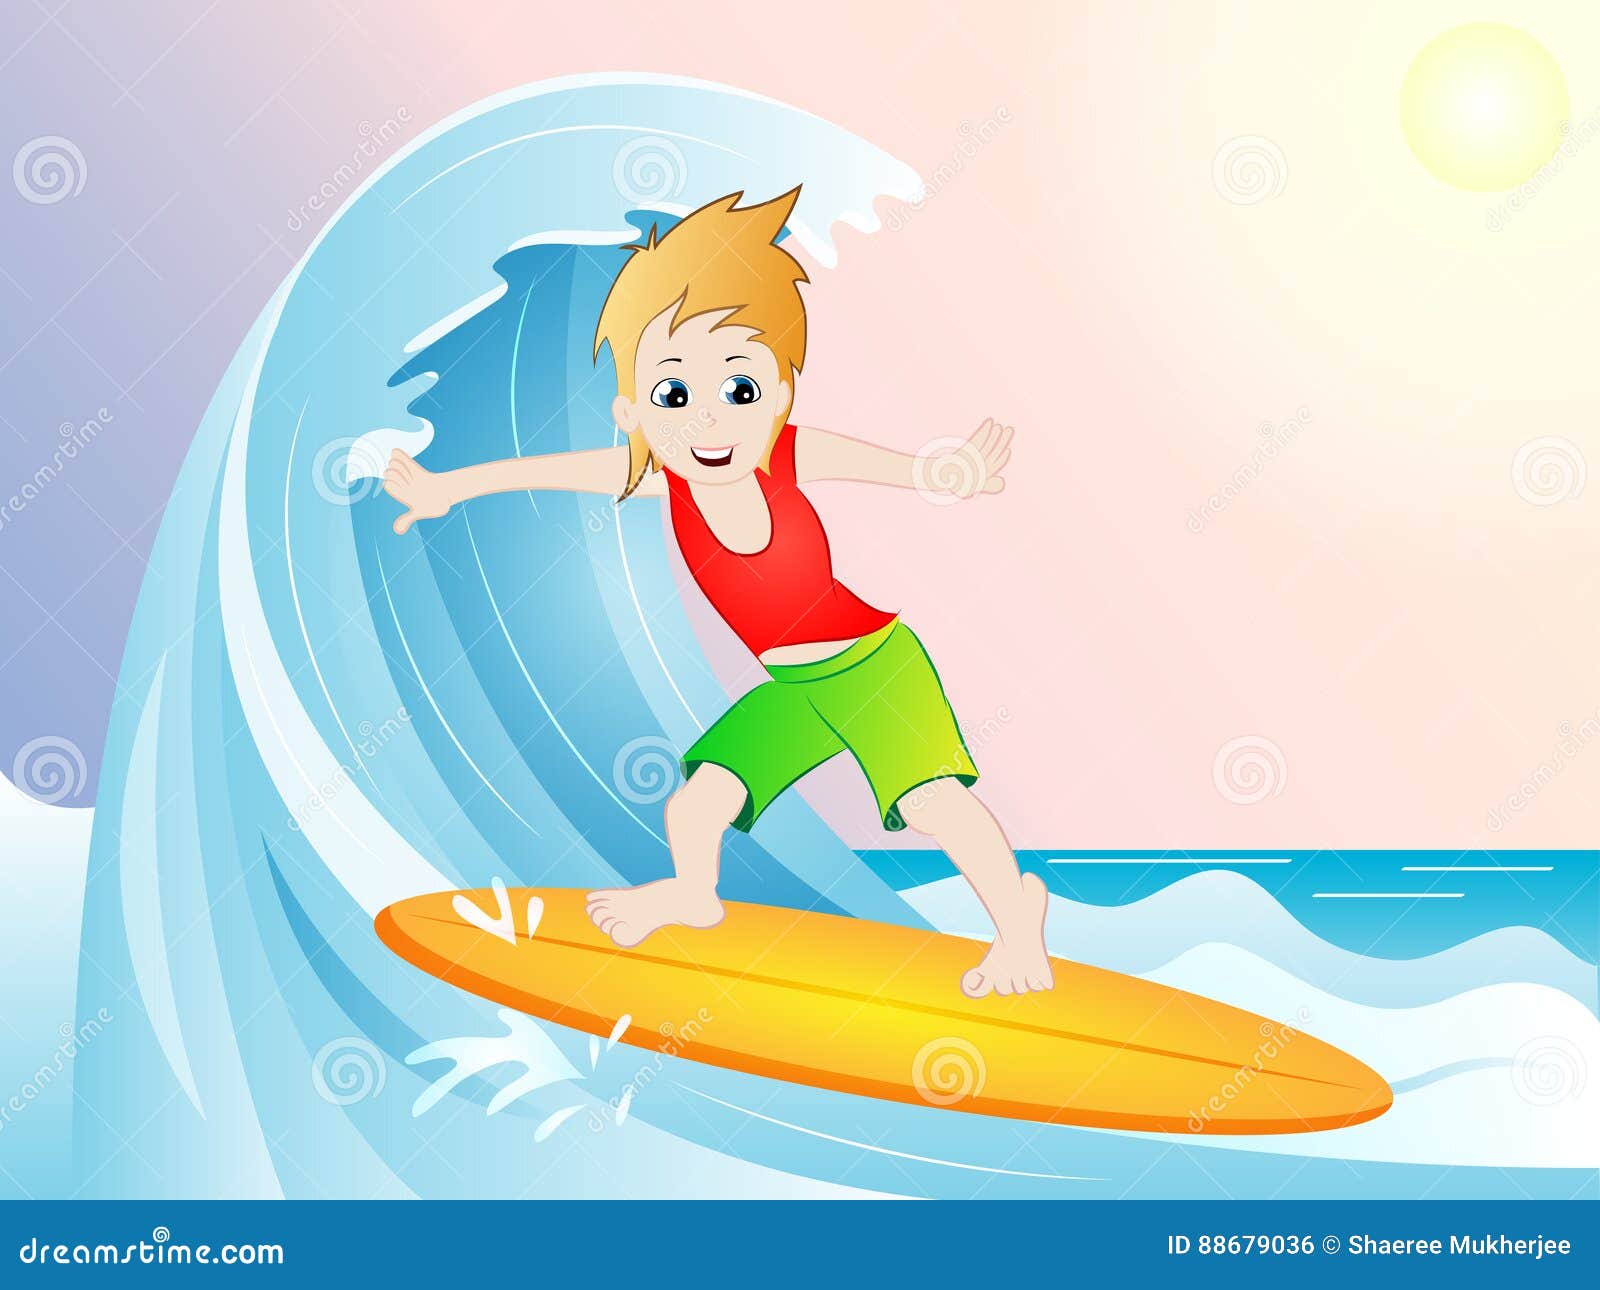 Cartoon Surfer Clip Art Stock Vector Illustration Of Vector